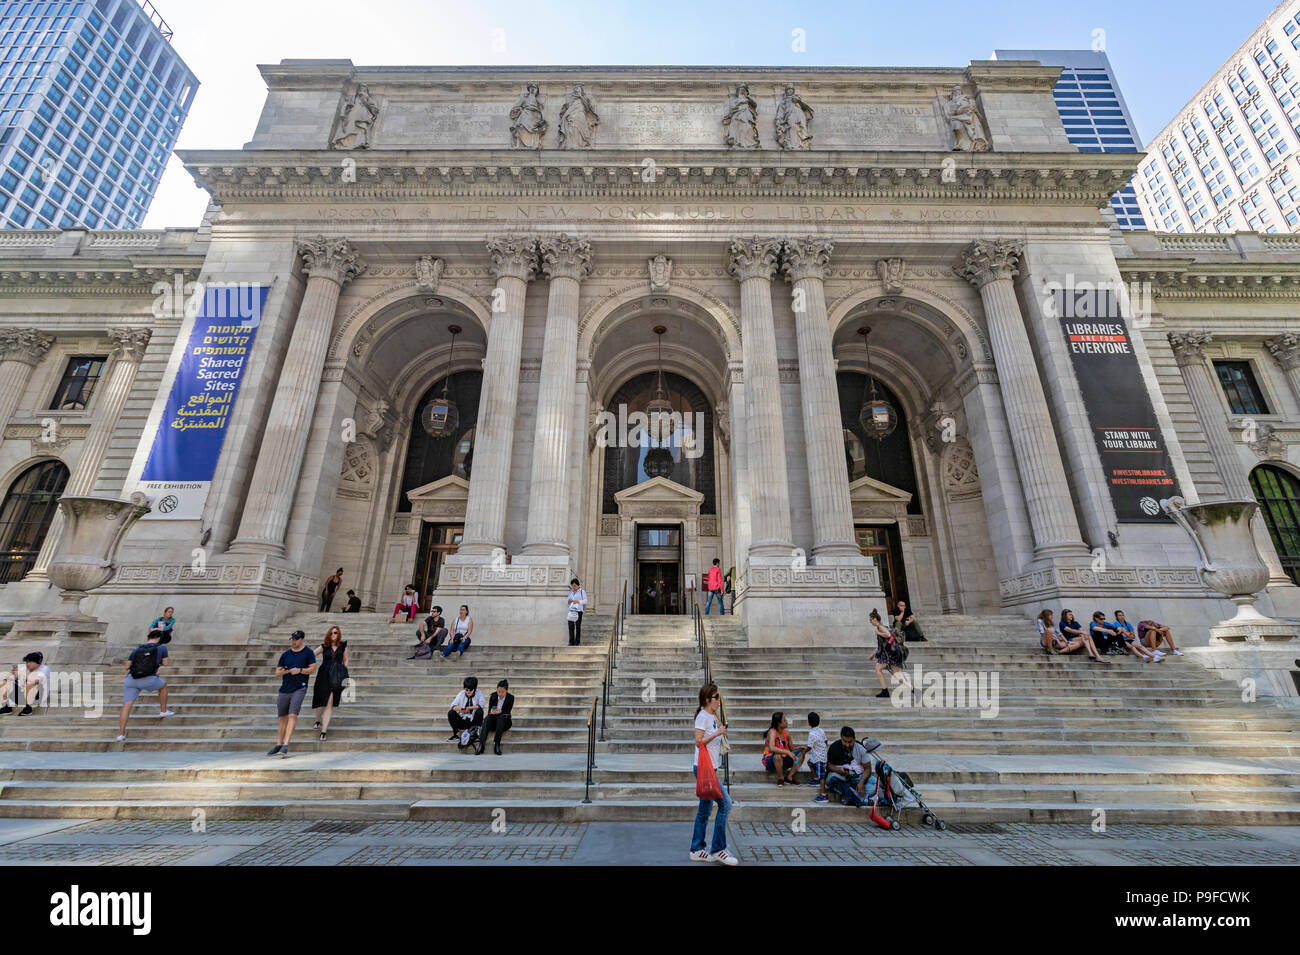 Vue extérieure de la Bibliothèque publique de New York sur la 42e rue à Manhattan, New York City et les gens assis sur les marches. Banque D'Images